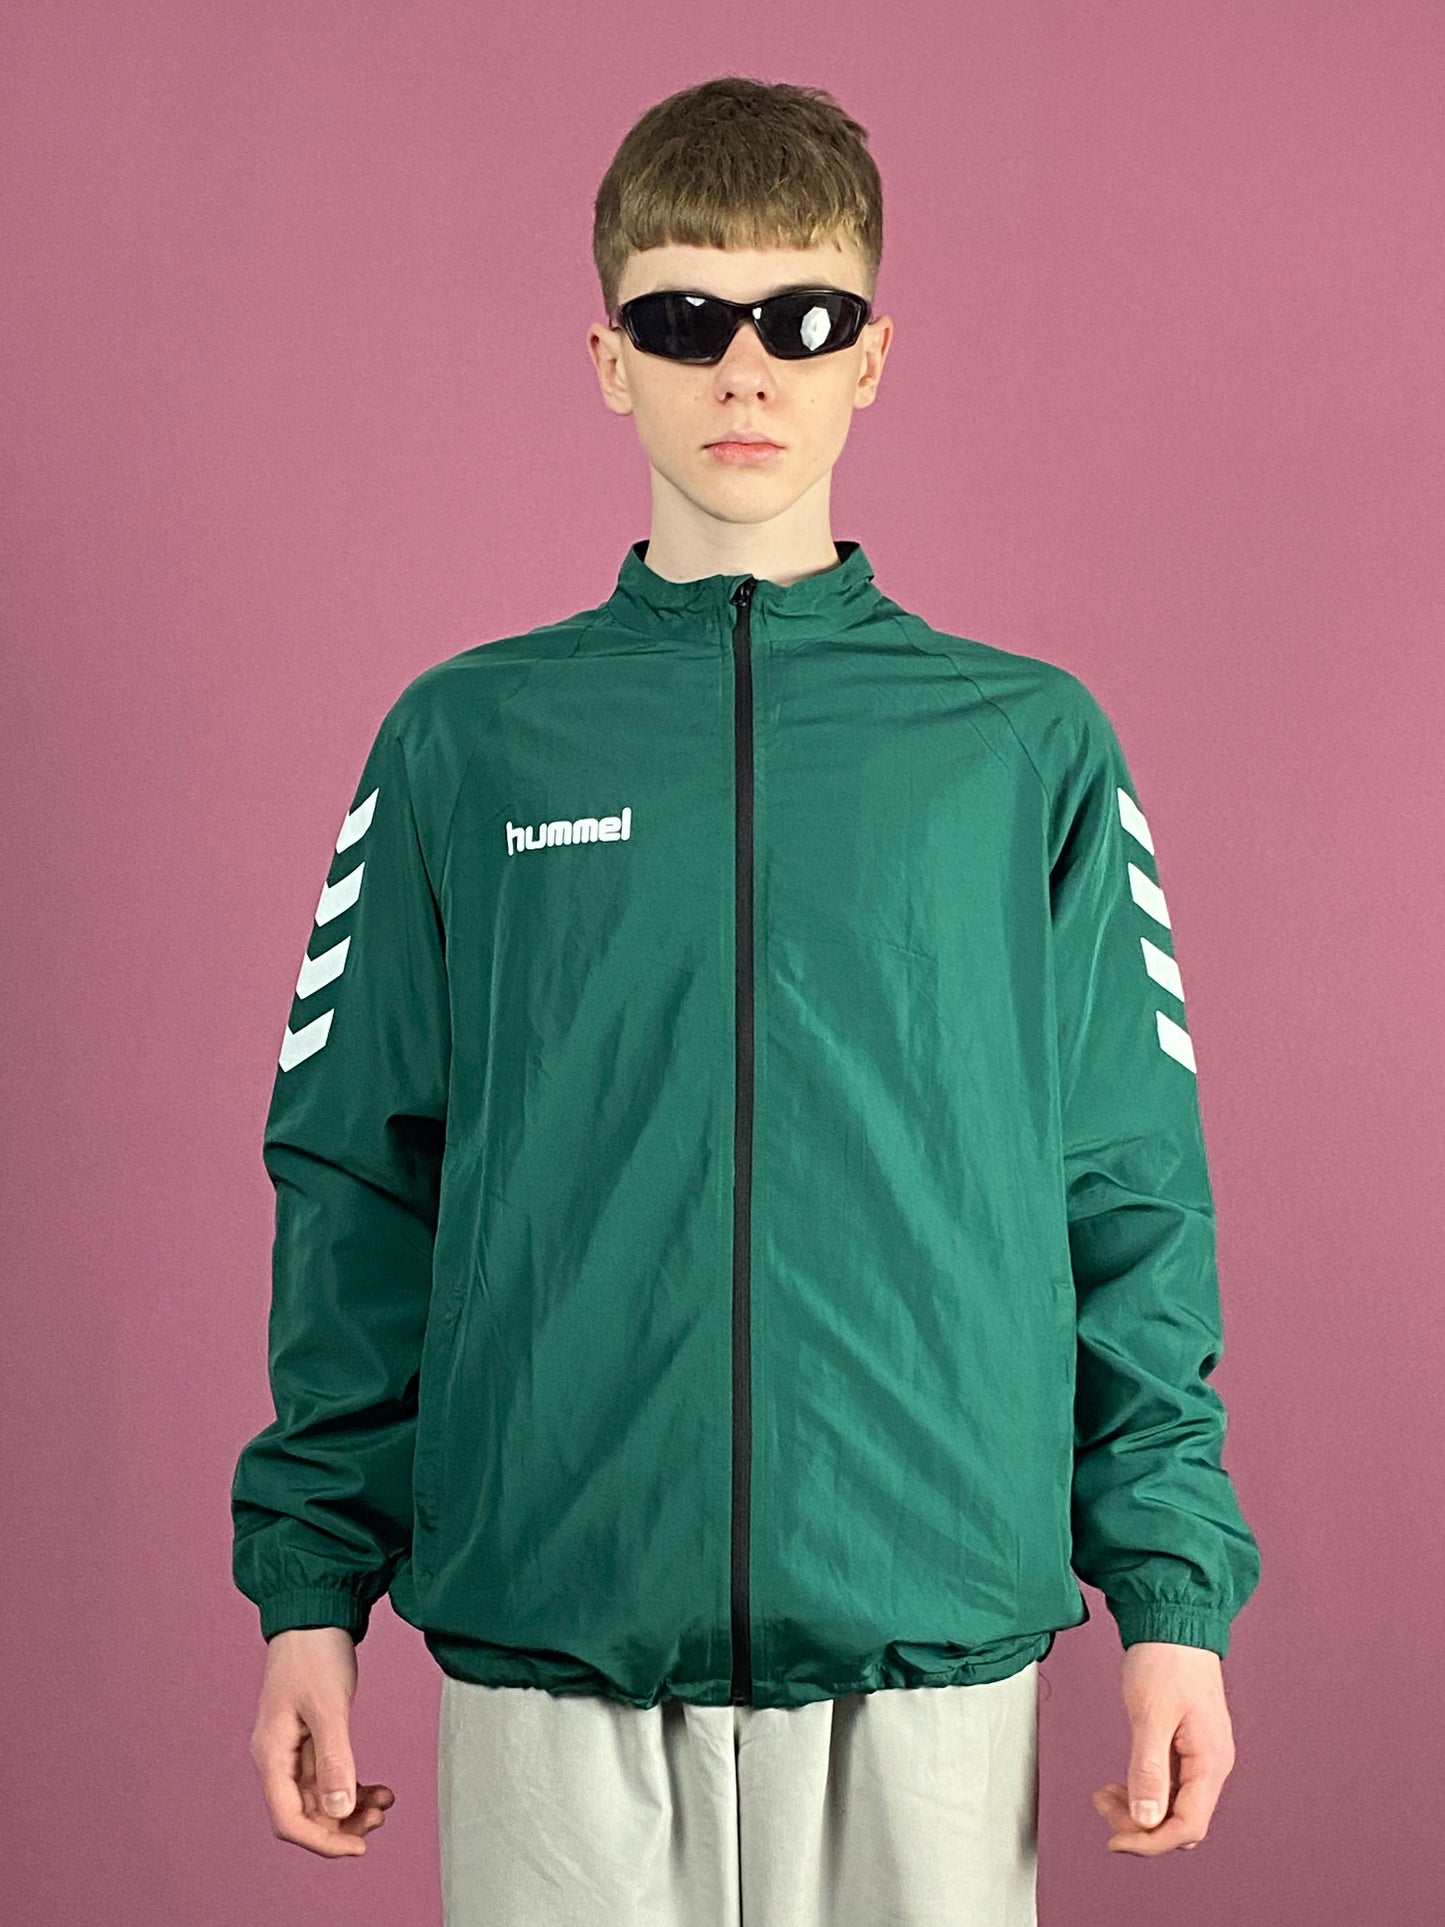 Hummel Vintage Men's Windbreaker Jacket - Large Green Polyester